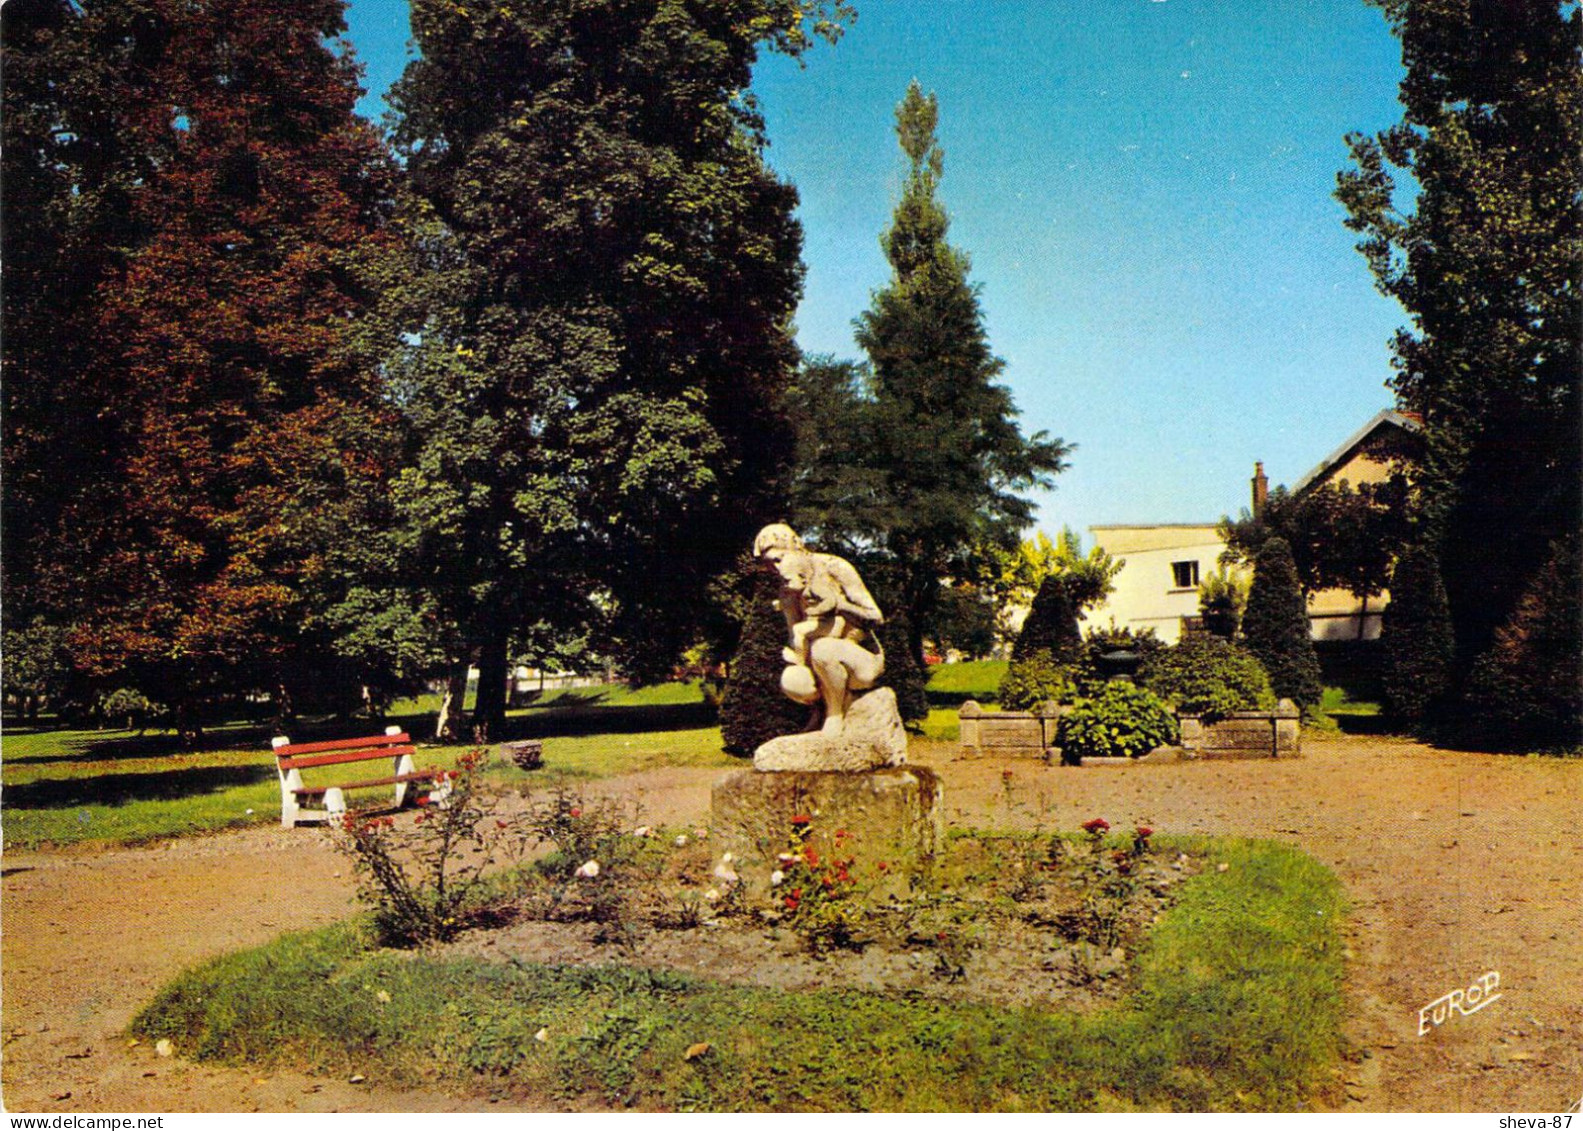 70 - Luxeuil Les Bains - Statue De La Maternité Dans Le Parc De L'Etablissement Thermal - Luxeuil Les Bains